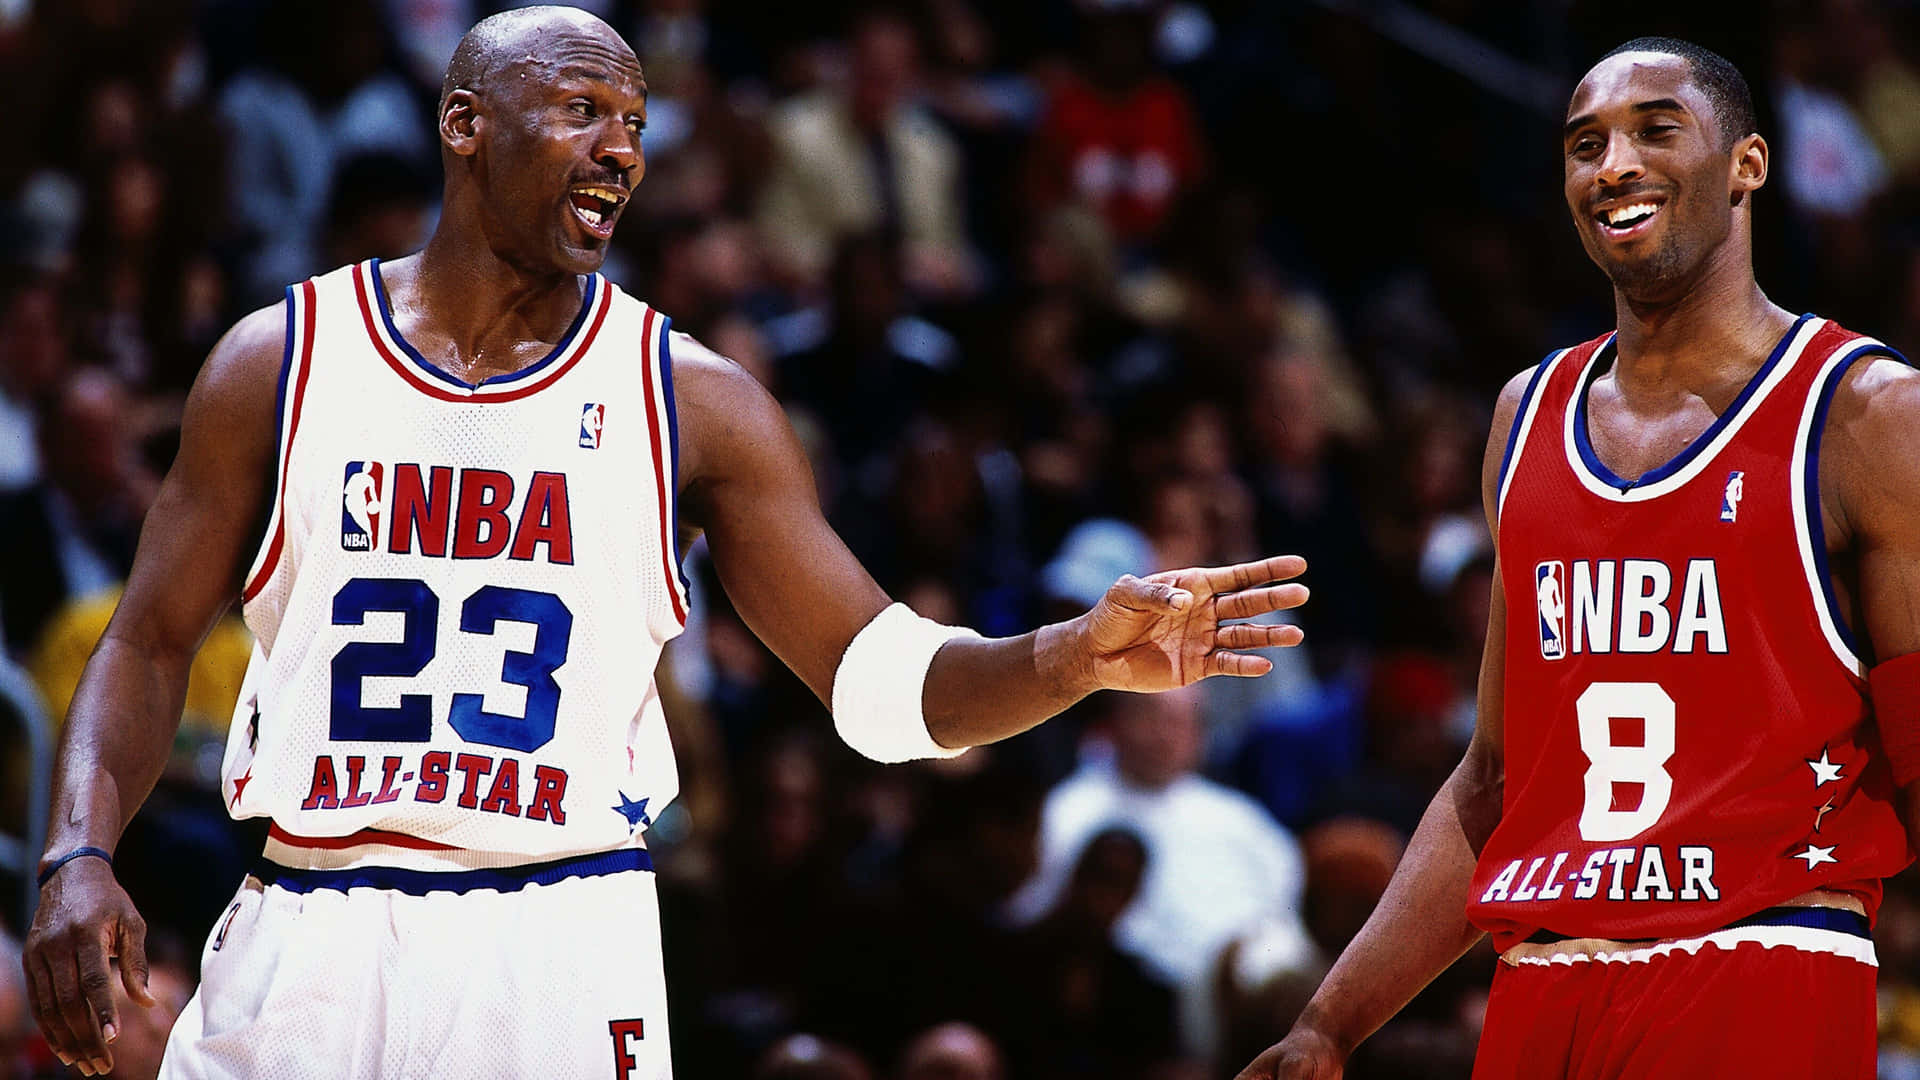 Kobe Bryant, basketball legend